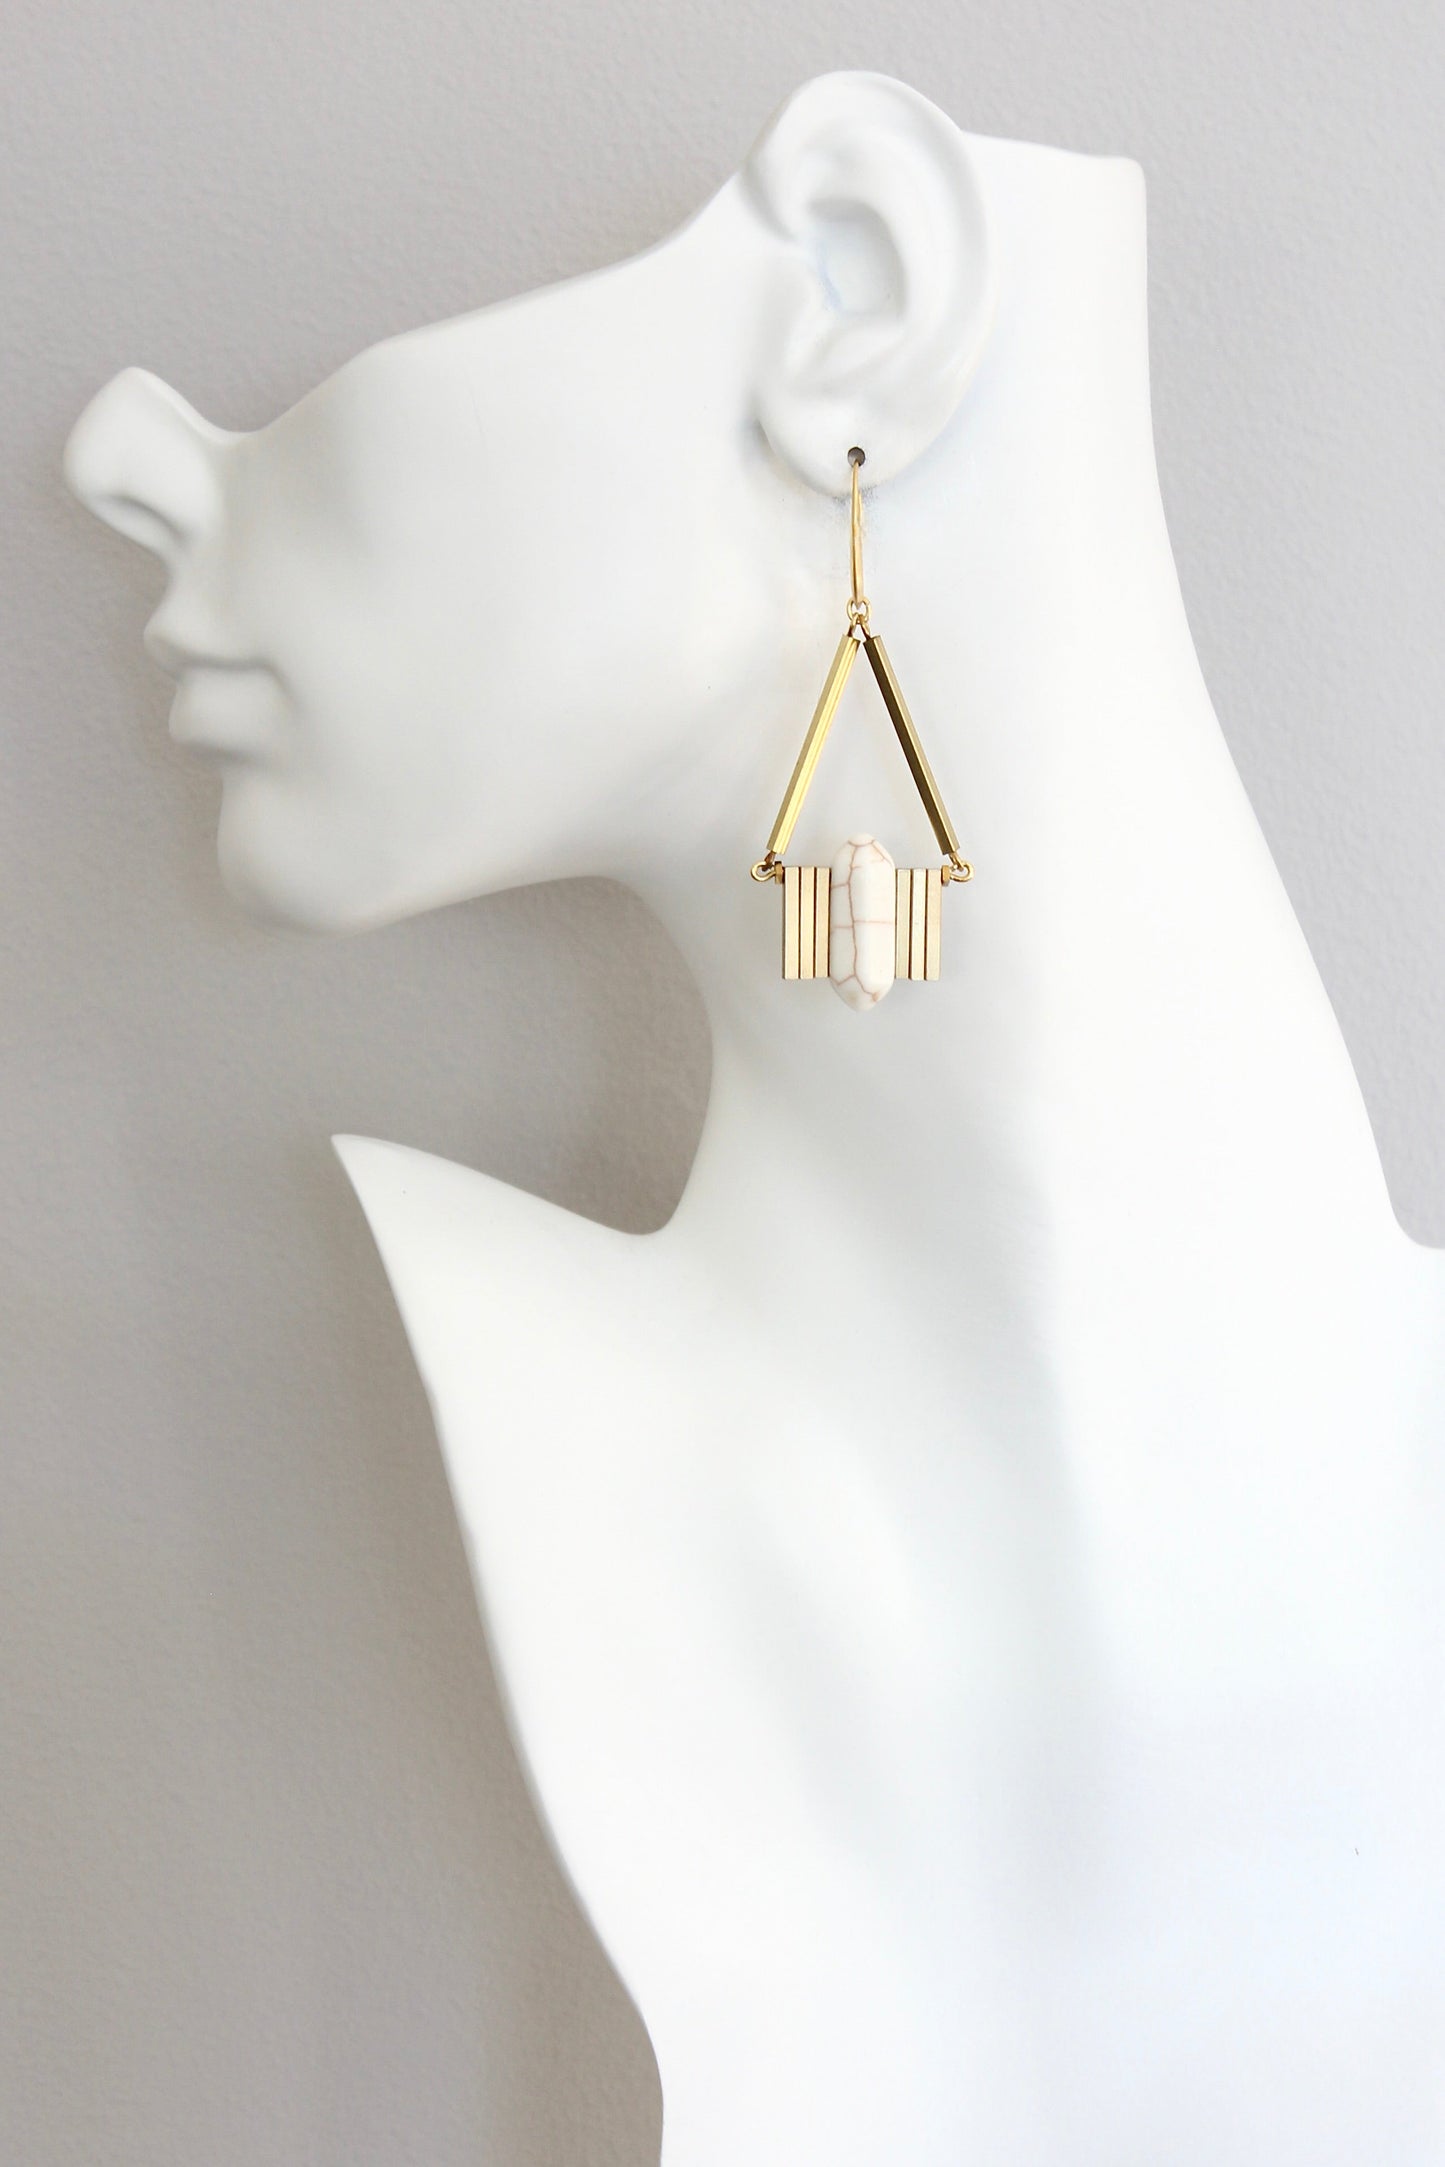 ISLE30 White and brass geometric earrings